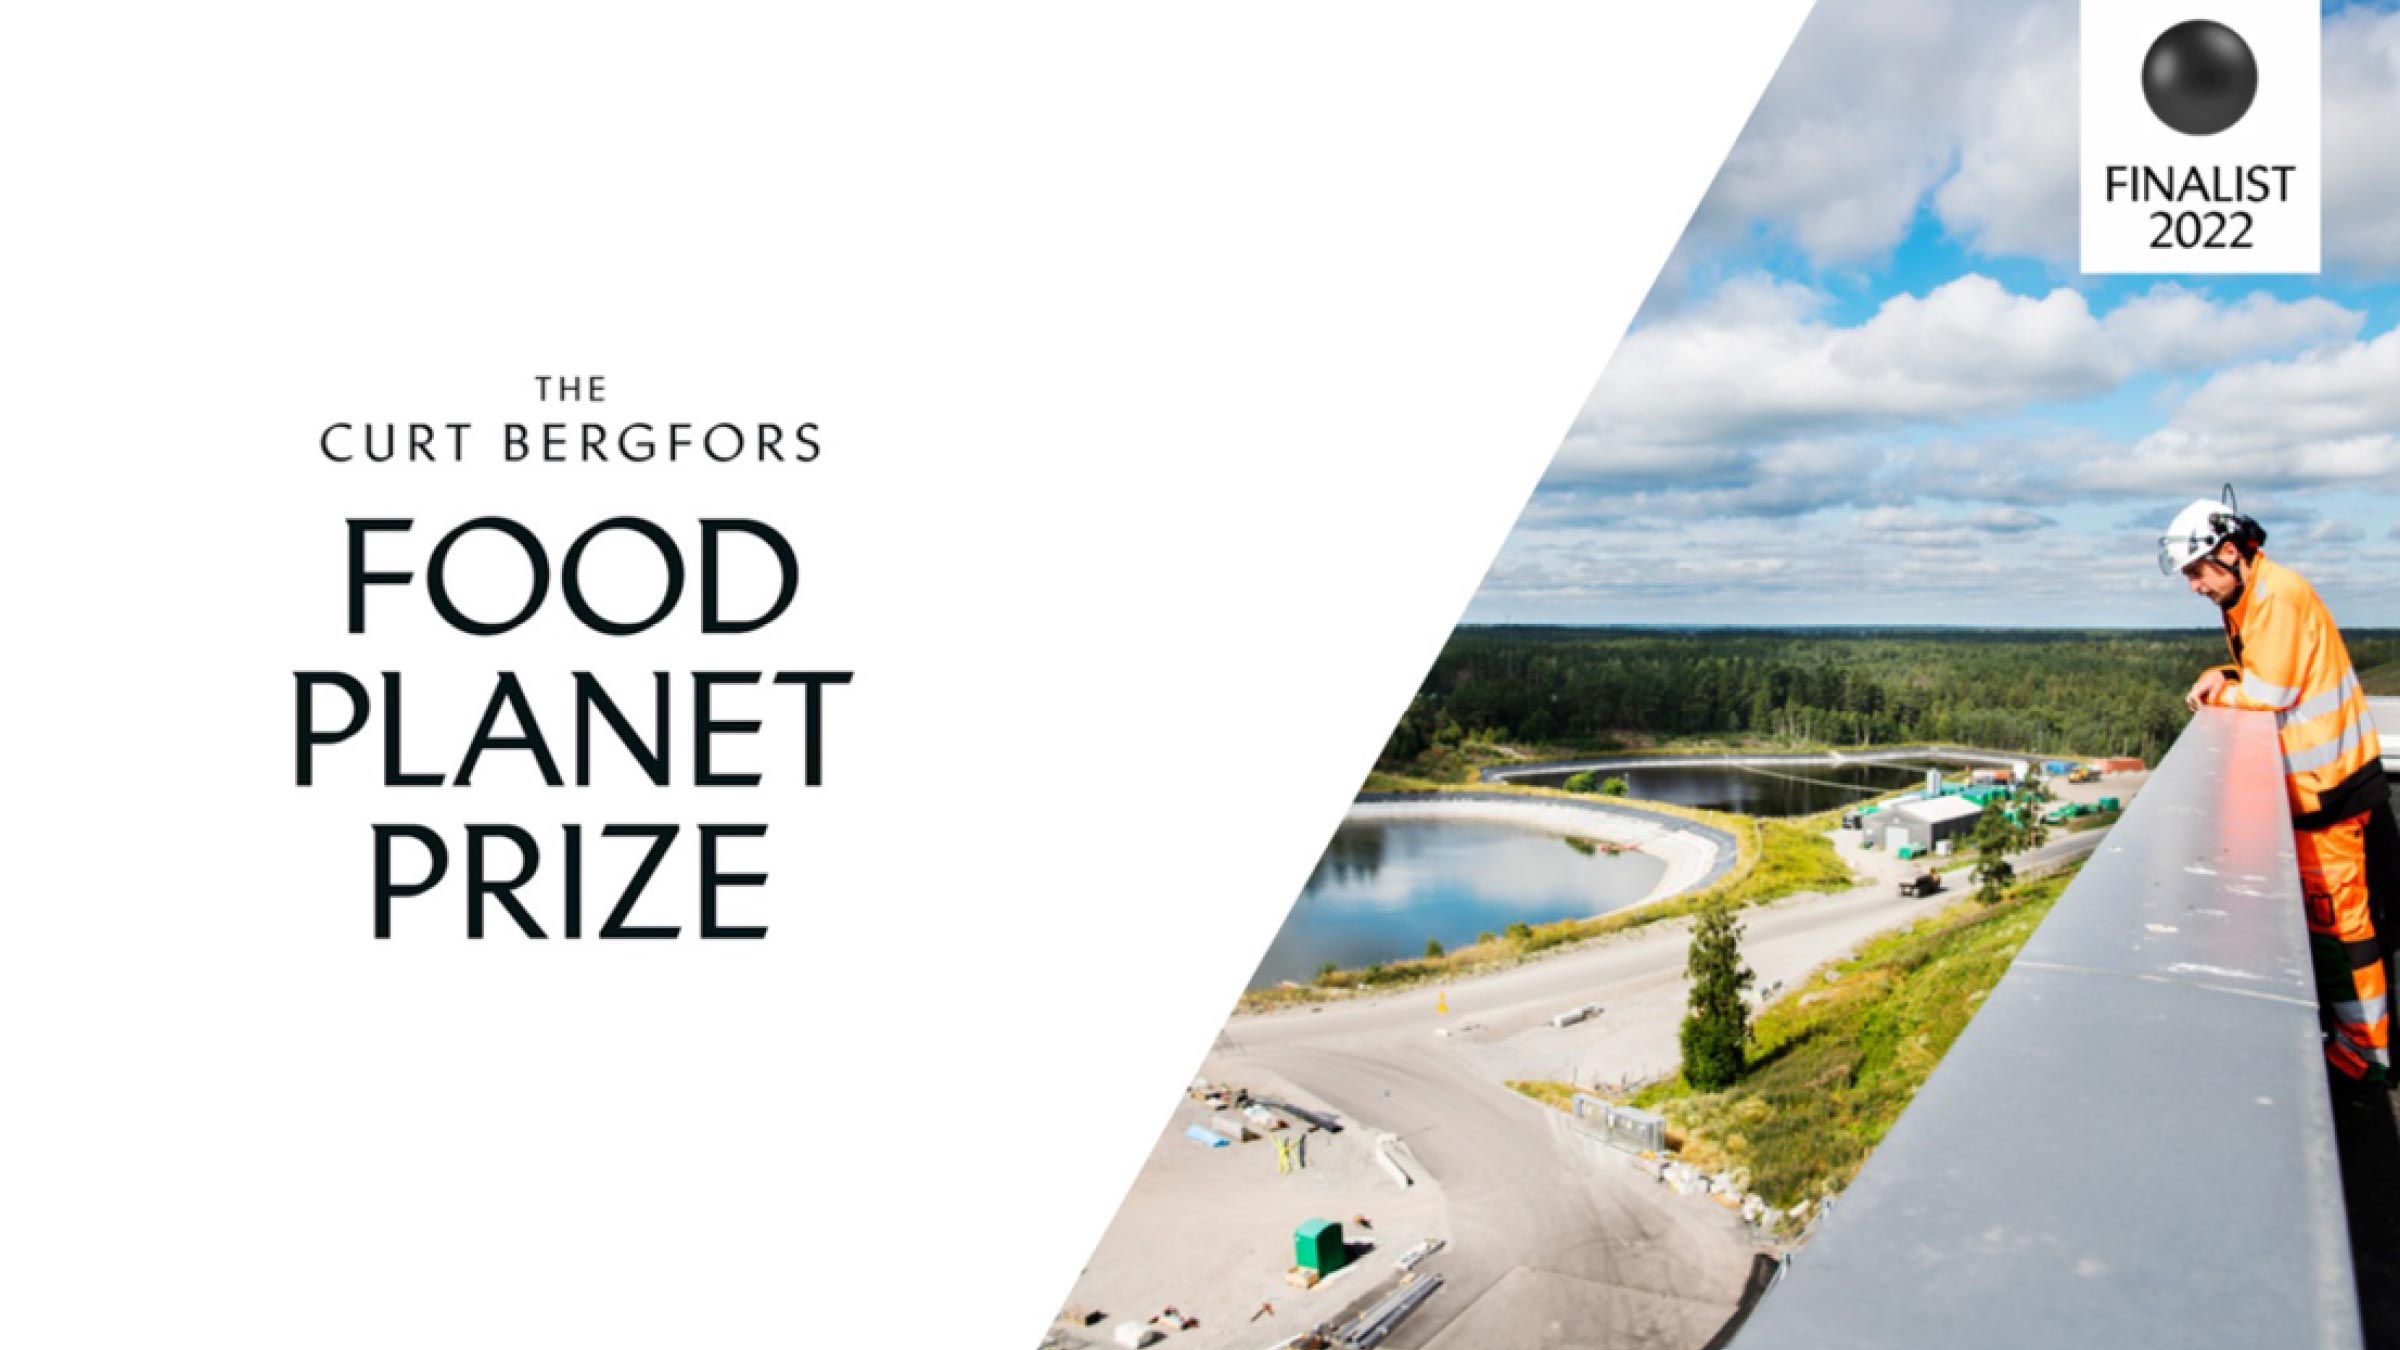 Ragn-Sells er finalist til Curt Bergfors Food Planet Prize 2022 som er verdens største miljøpris.